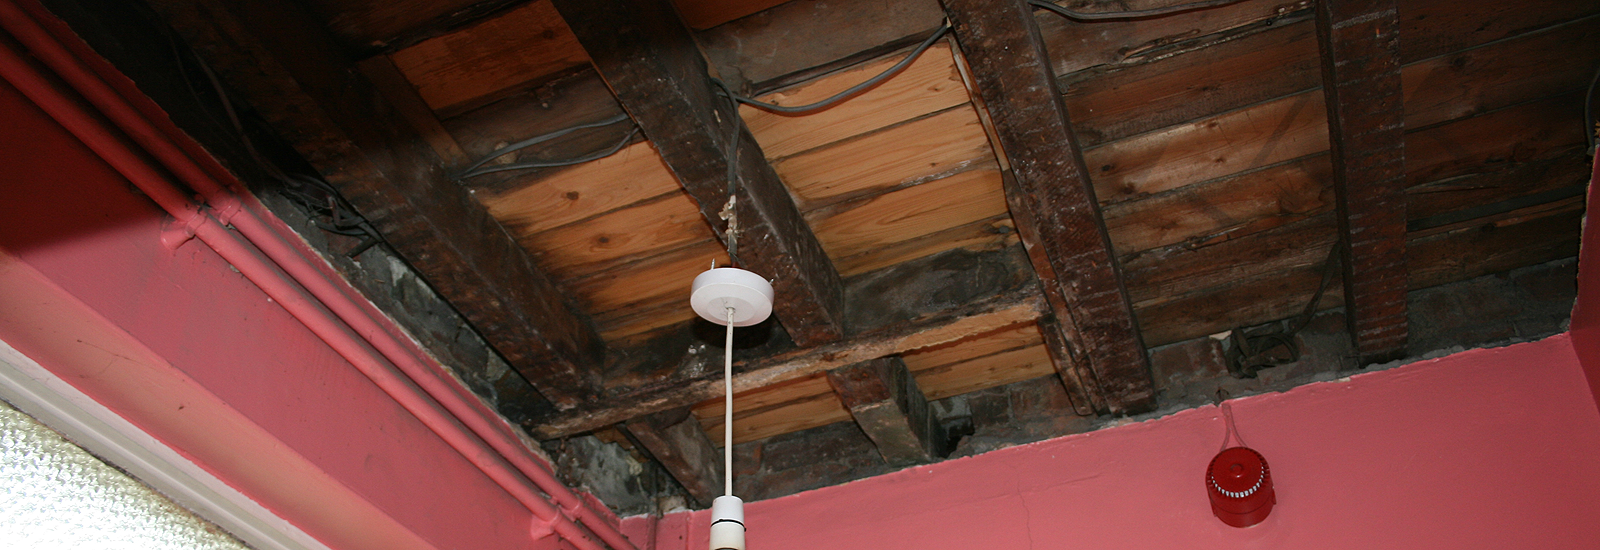 Ceiling Repair Water Damaged Before Replaster